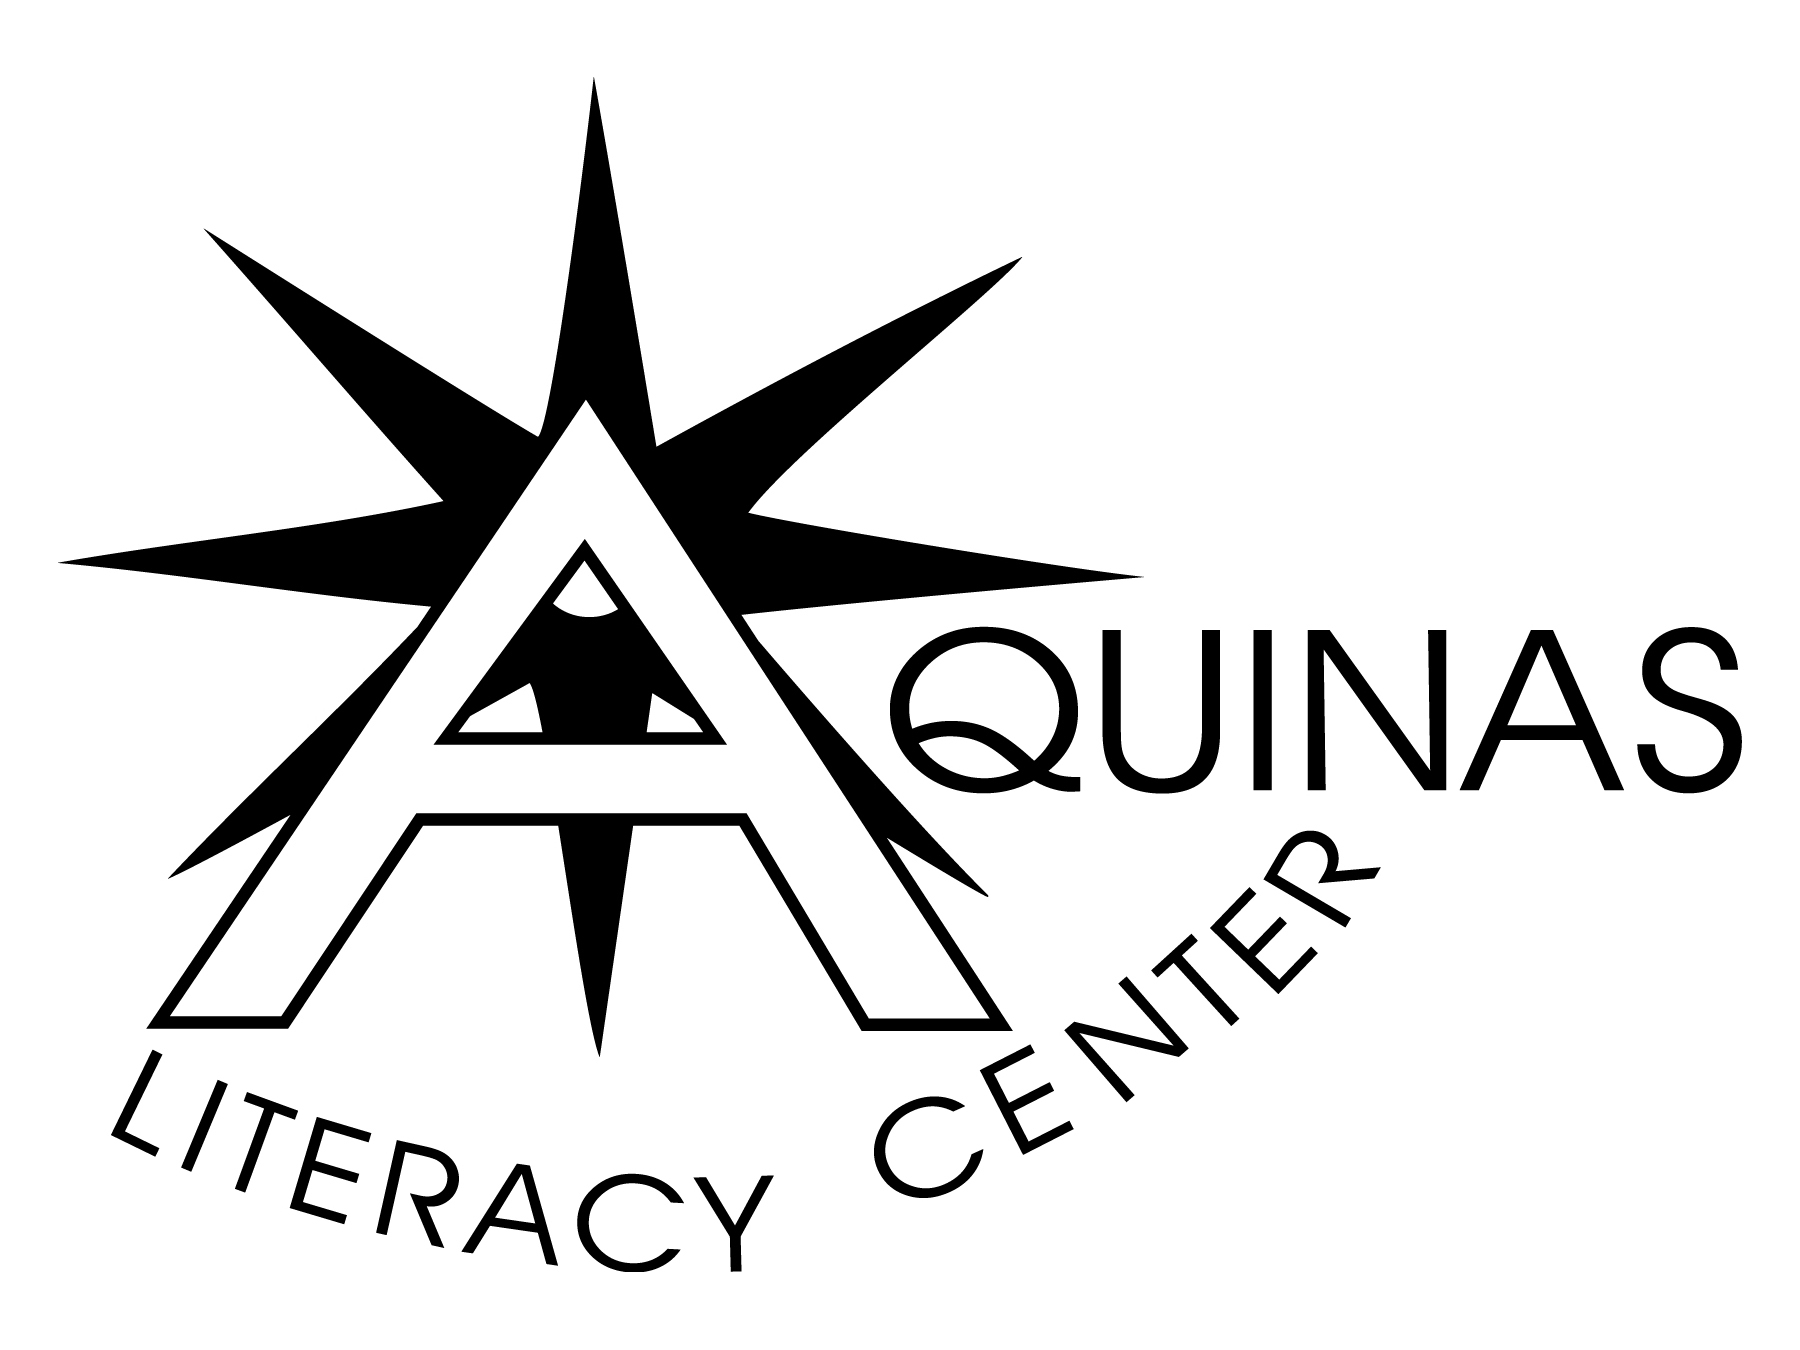 Aquinas Literacy Center logo